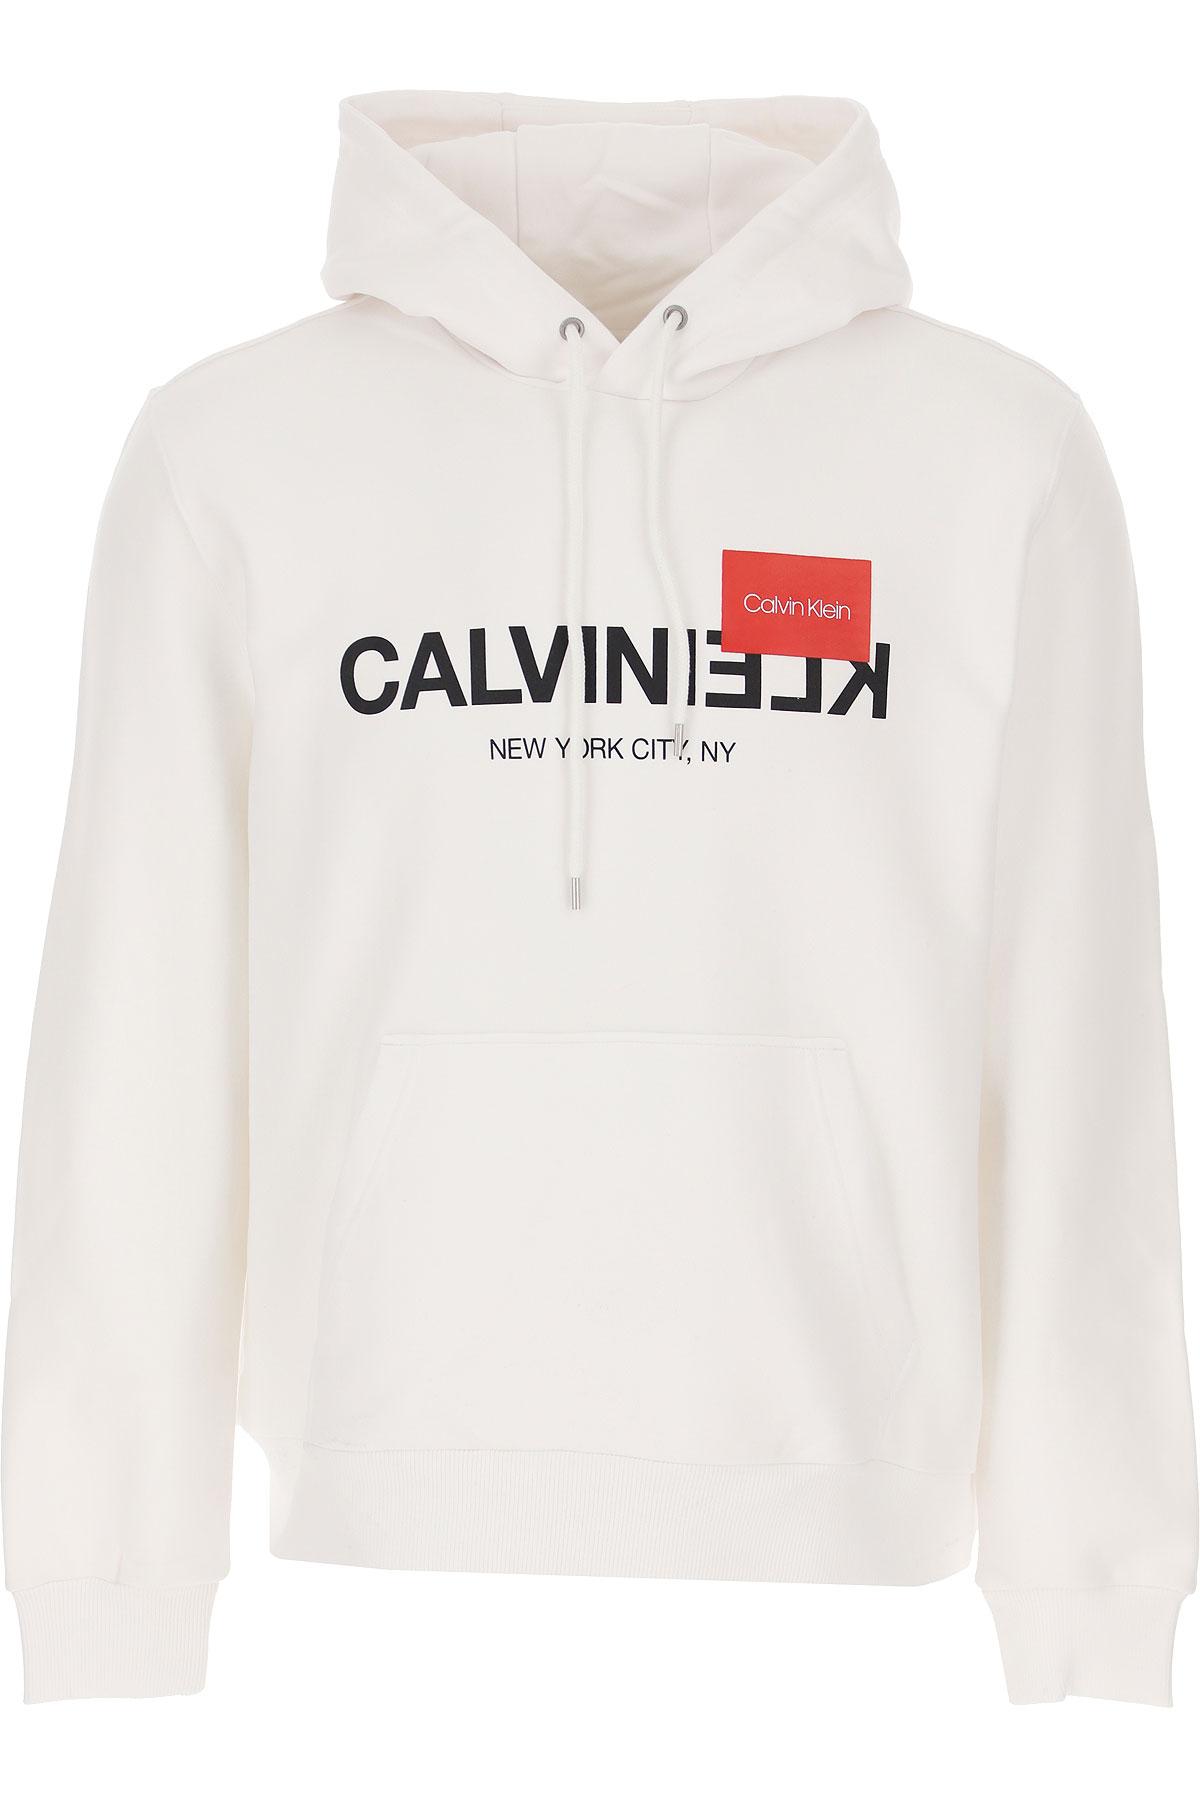 Calvin Klein Cotton Sweater Jumper in White for Men - Lyst